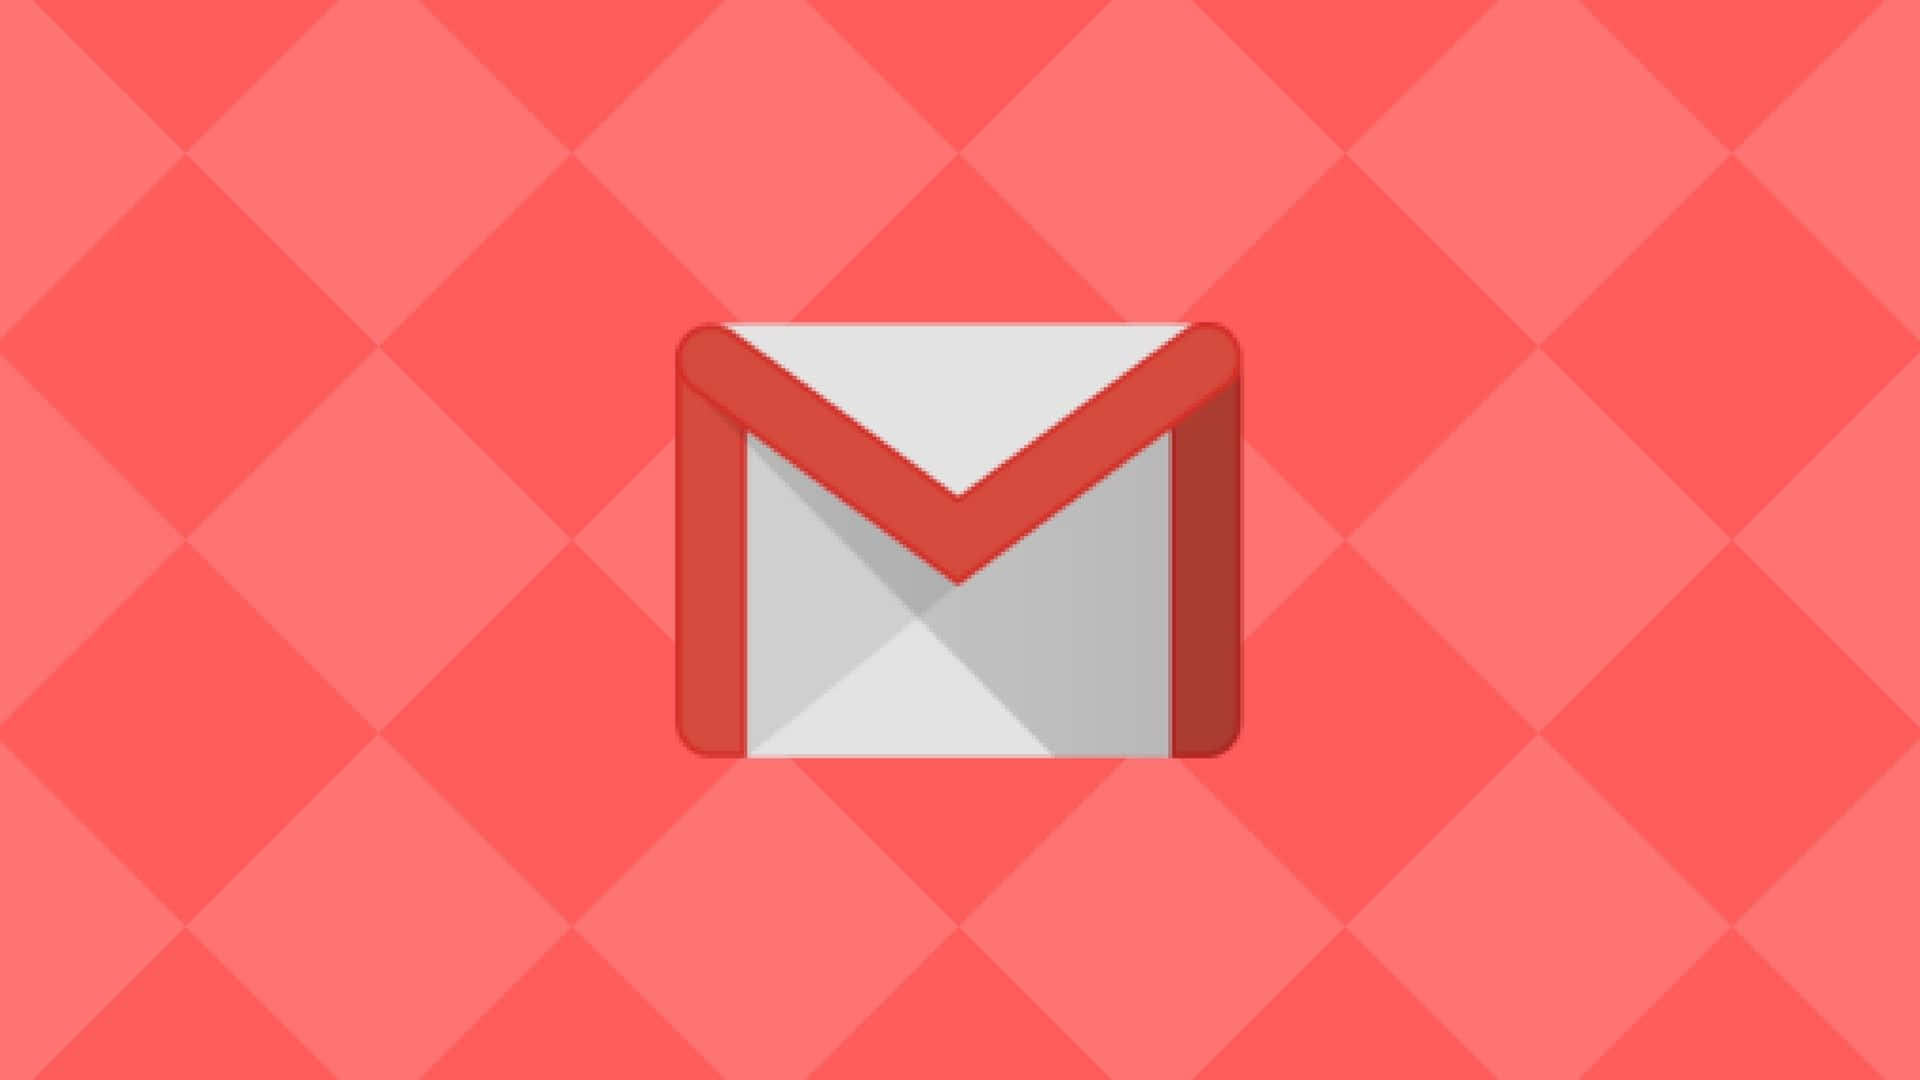 Mannüberprüft E-mails Über Sein Professionelles Gmail-konto